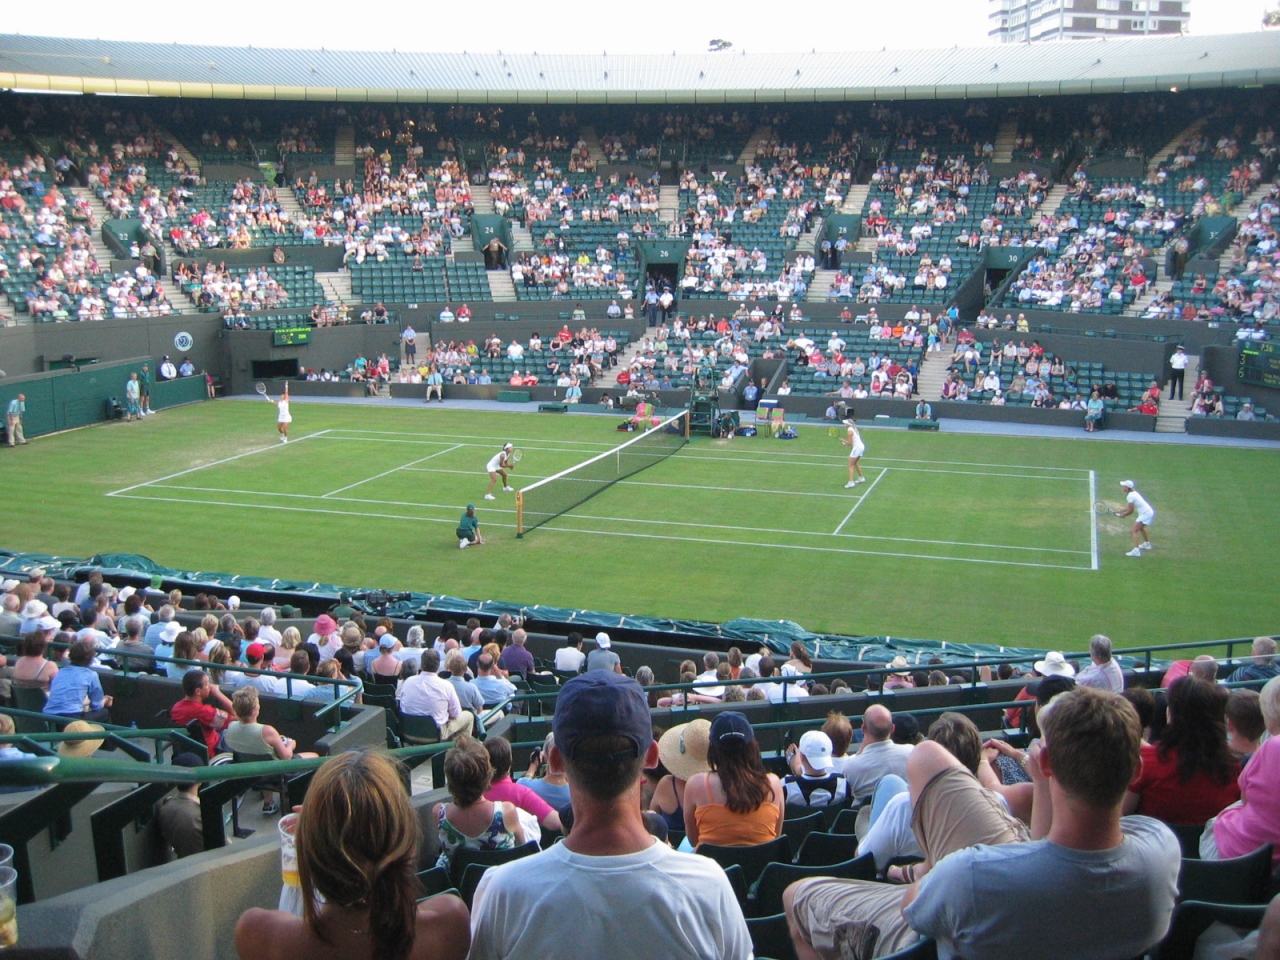 Wimbledon Championships 05 ウィンブルドン 初めてのウィンブルドンテニス観戦 ウィンブルドン イギリス の旅行記 ブログ By Bebetomoさん フォートラベル